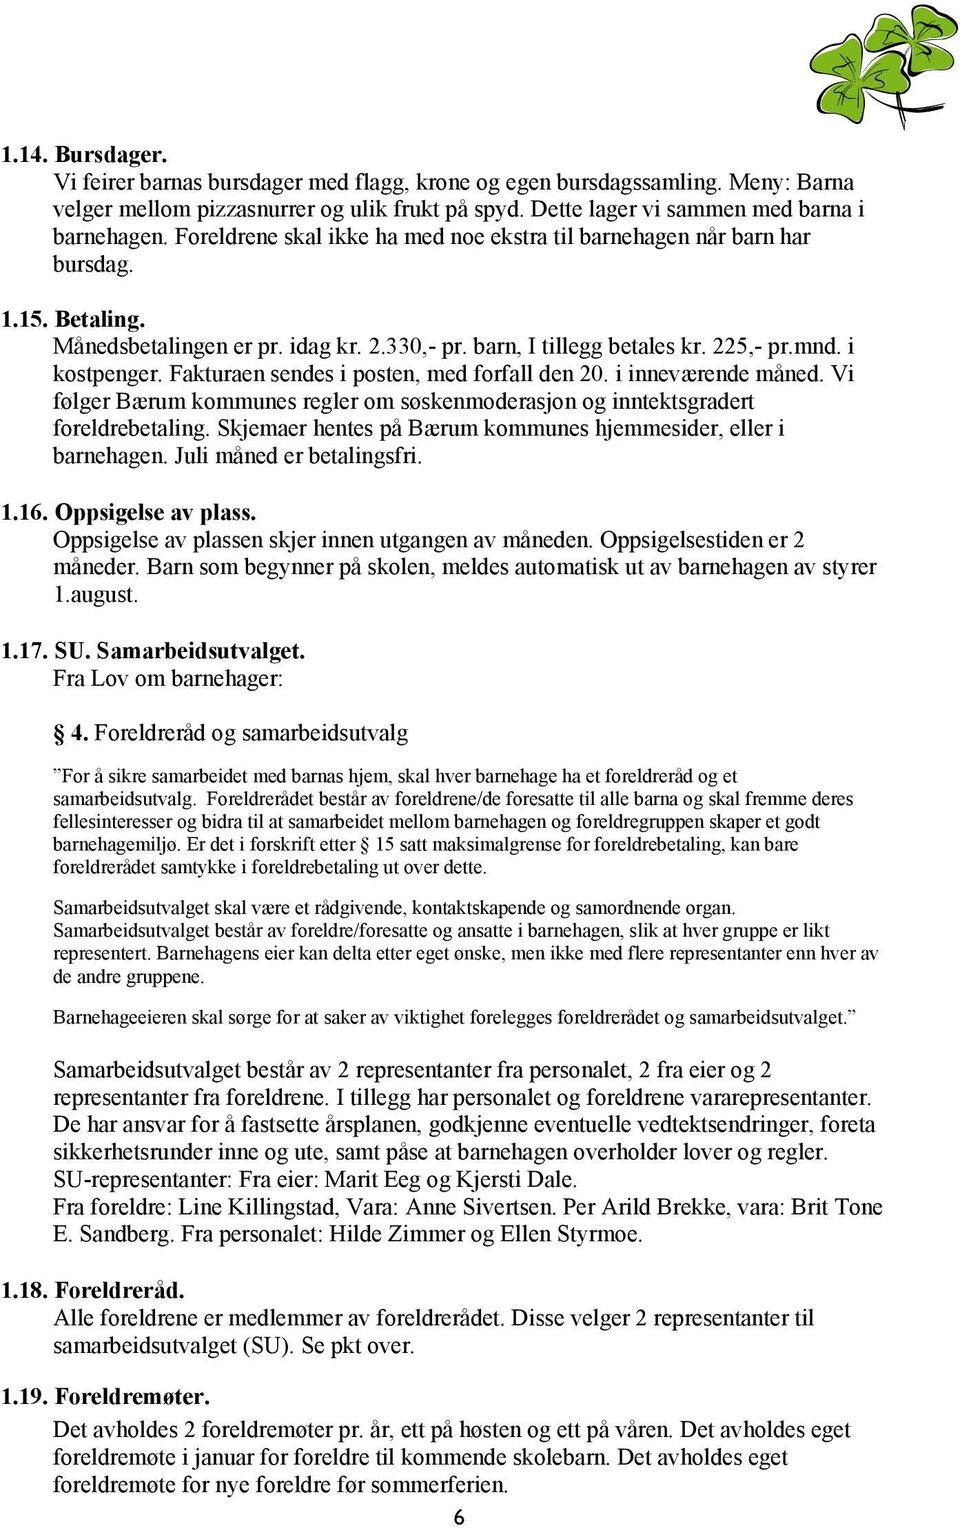 Fakturaen sendes i posten, med forfall den 20. i inneværende måned. Vi følger Bærum kommunes regler om søskenmoderasjon og inntektsgradert foreldrebetaling.